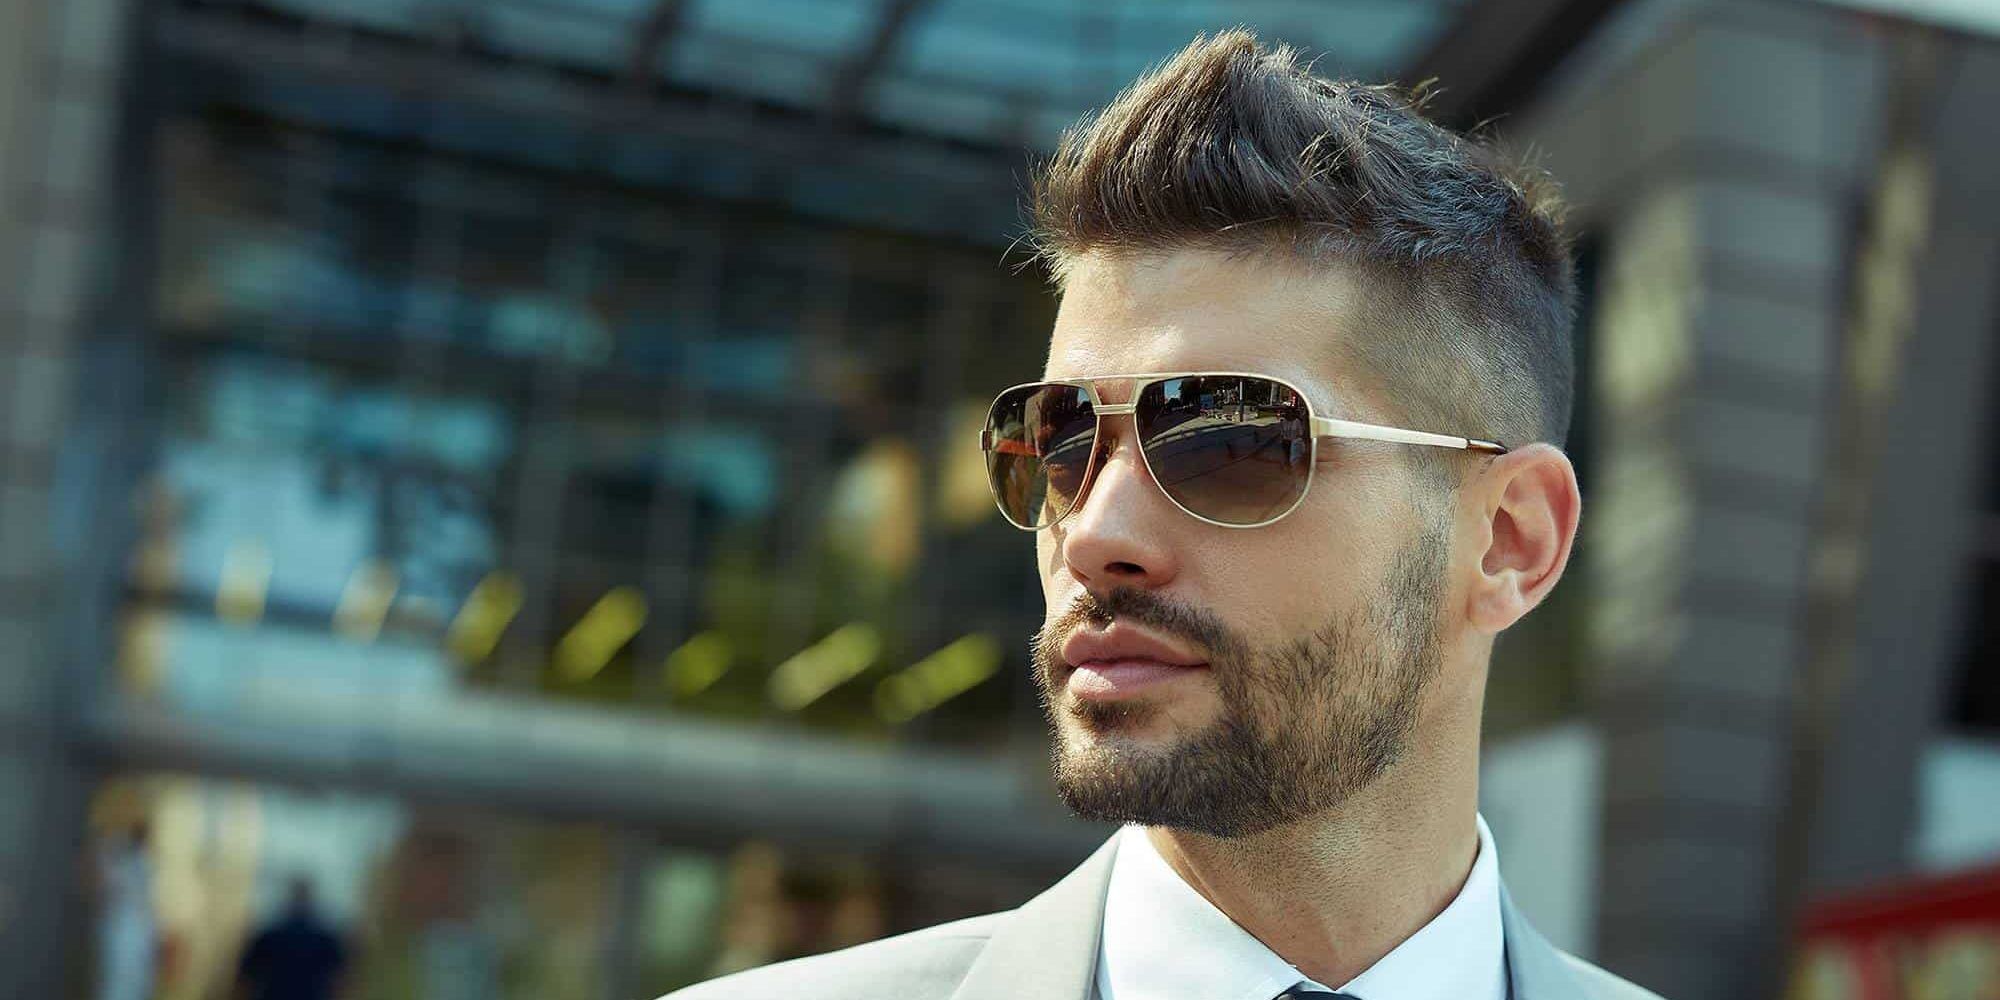 10 Best Sunglasses for Men of 2021 - ReviewThis